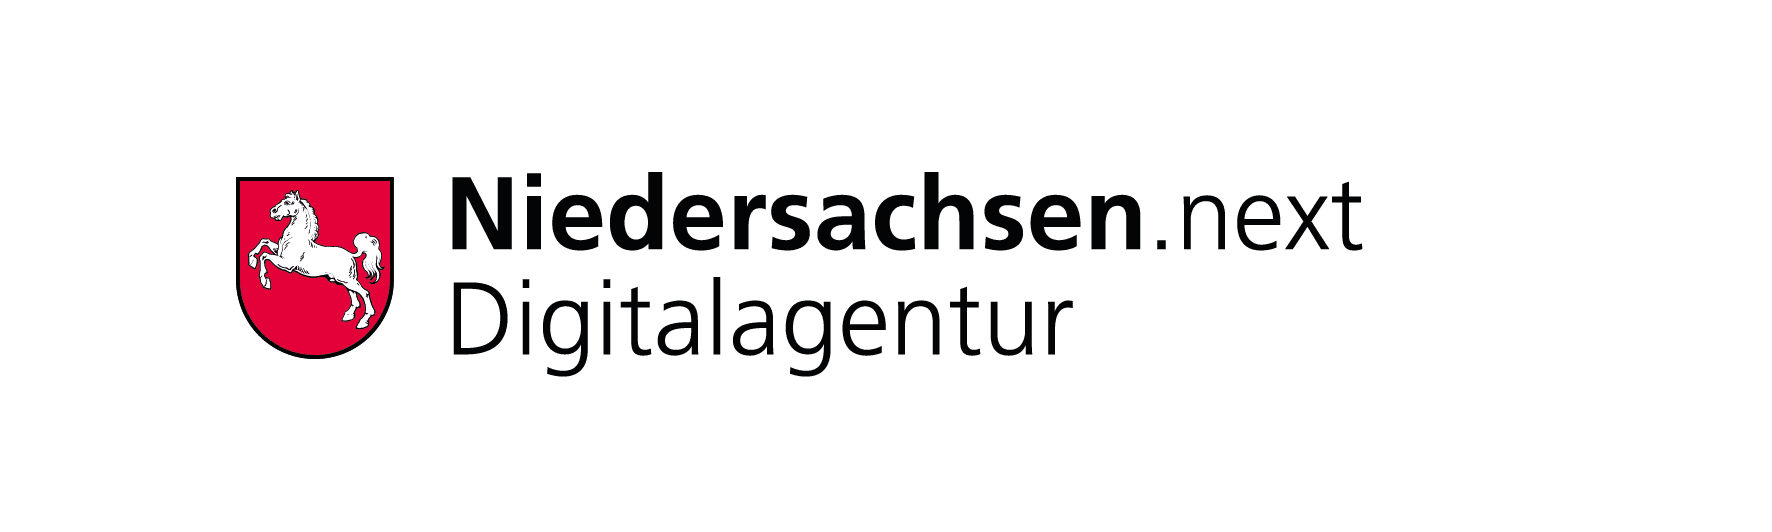 Logo Niedersachsen.next Digitalagentur